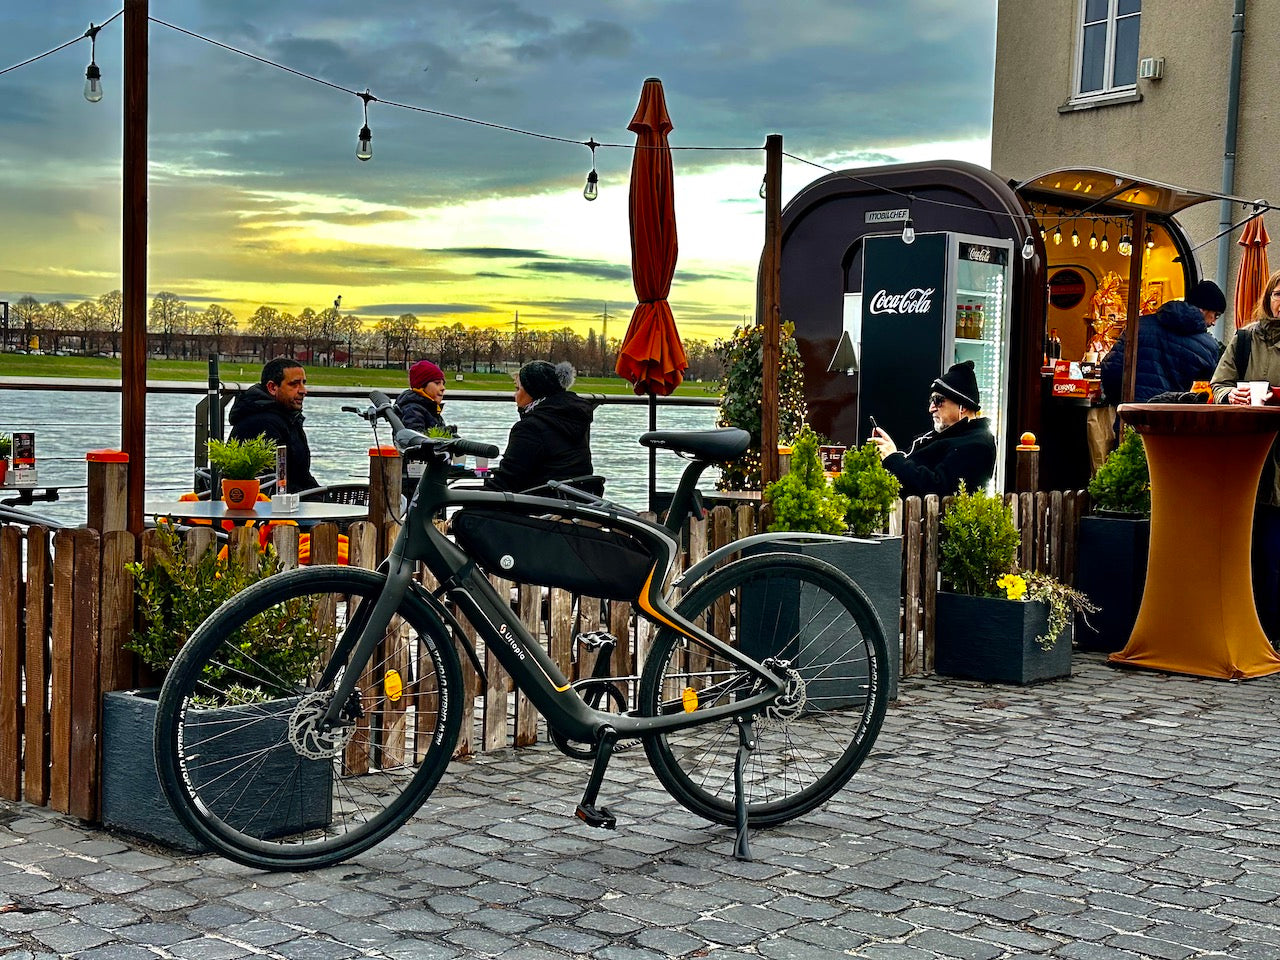 Urtopia ebike test ride in Cologne